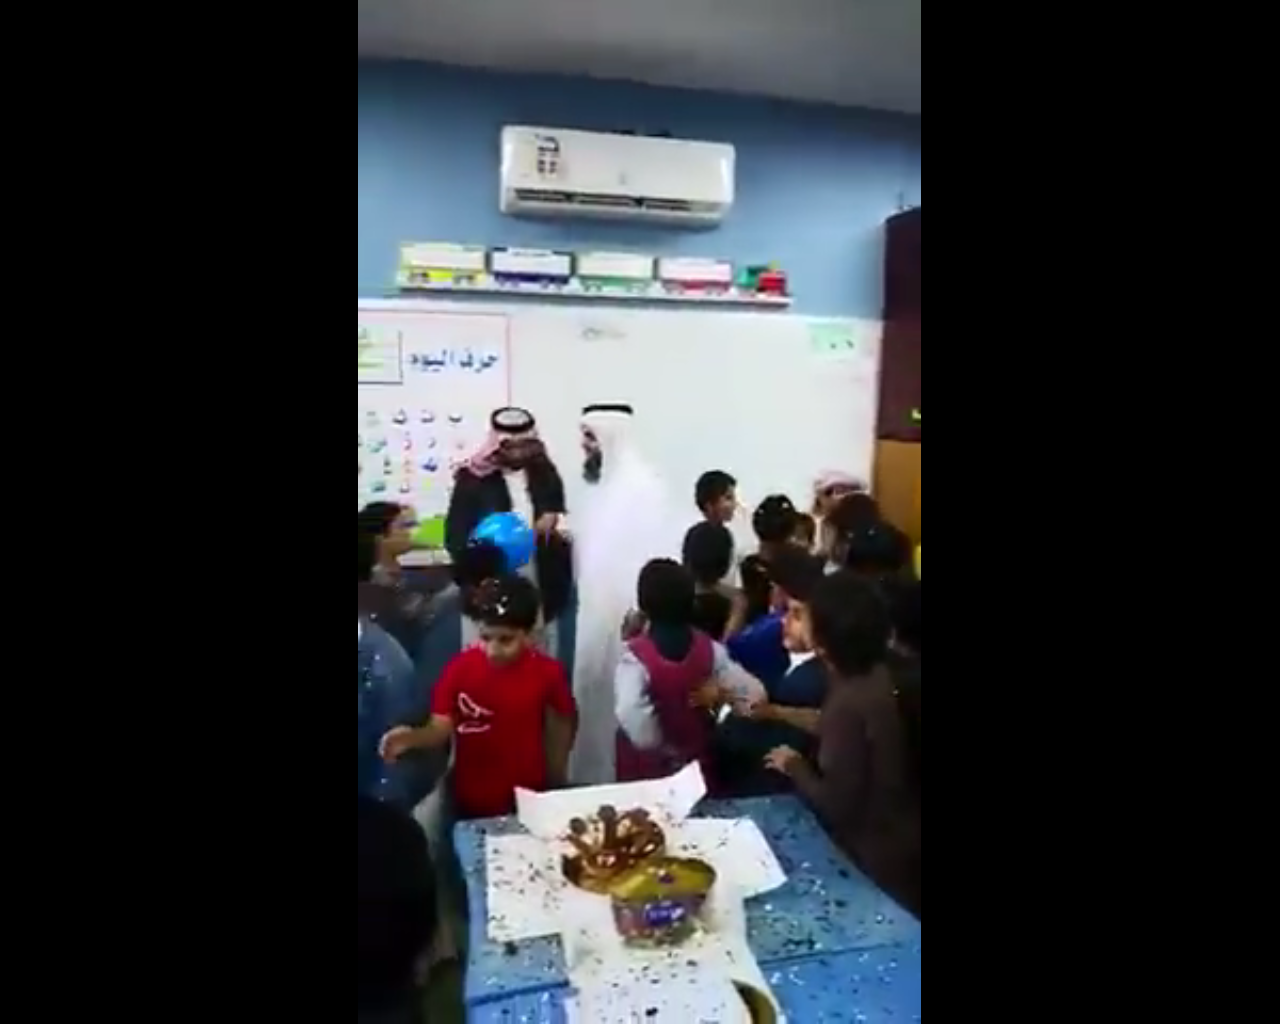 فيديو مؤثر.. طلاب يودعون معلمهم المتقاعد بالبكاء وحفل بسيط - المواطن